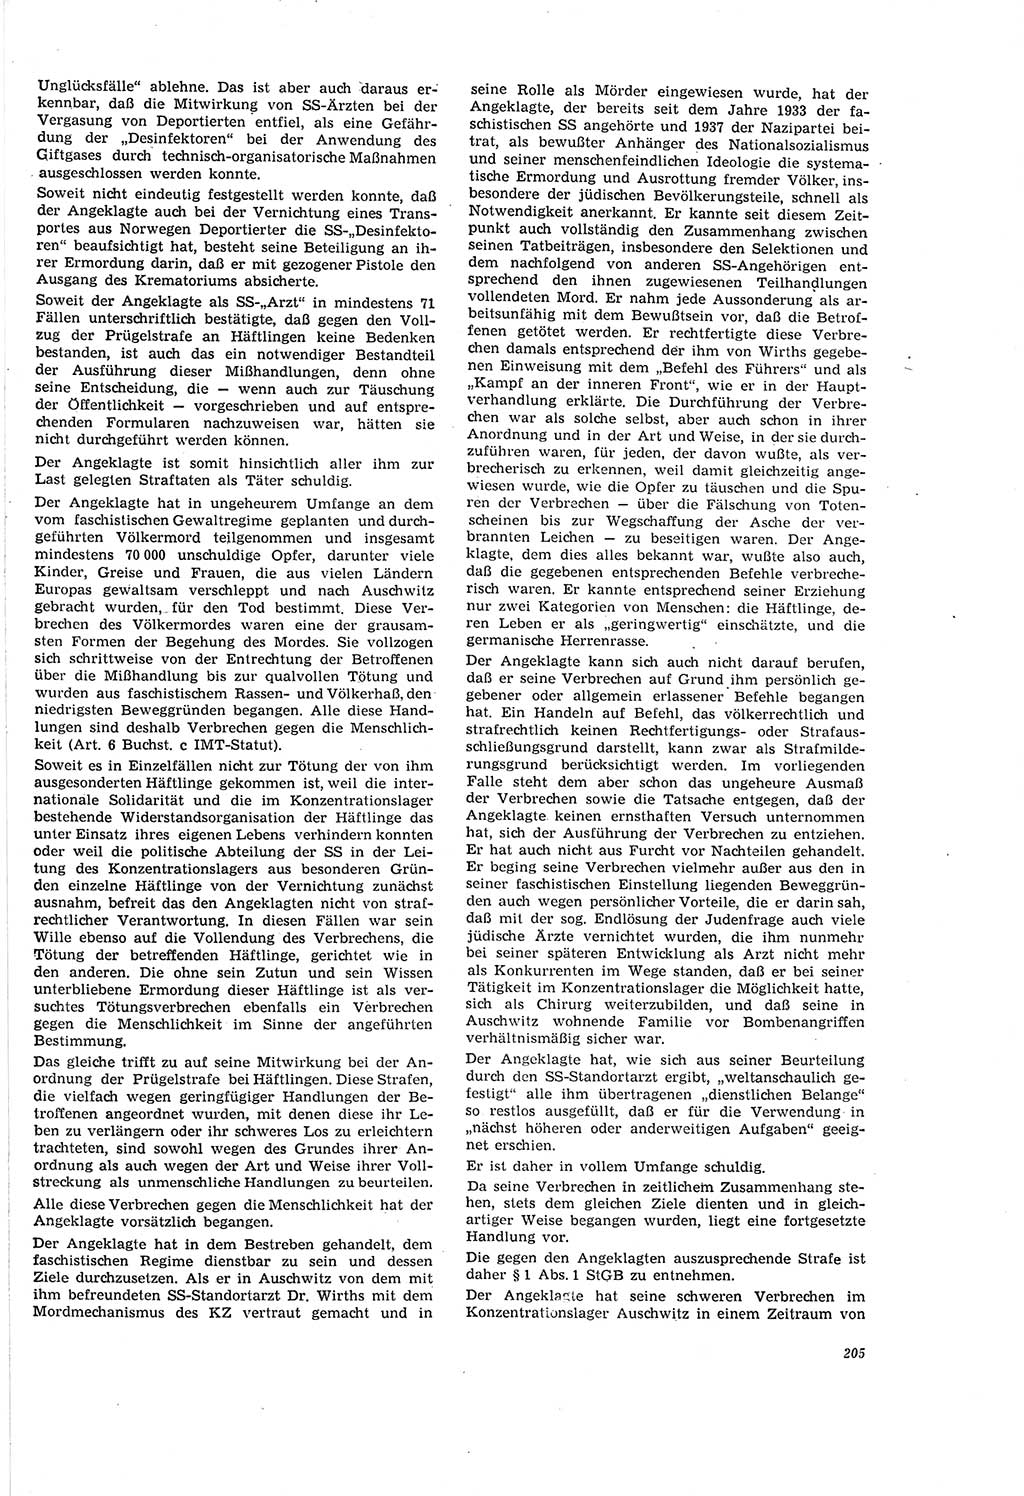 Neue Justiz (NJ), Zeitschrift für Recht und Rechtswissenschaft [Deutsche Demokratische Republik (DDR)], 20. Jahrgang 1966, Seite 205 (NJ DDR 1966, S. 205)